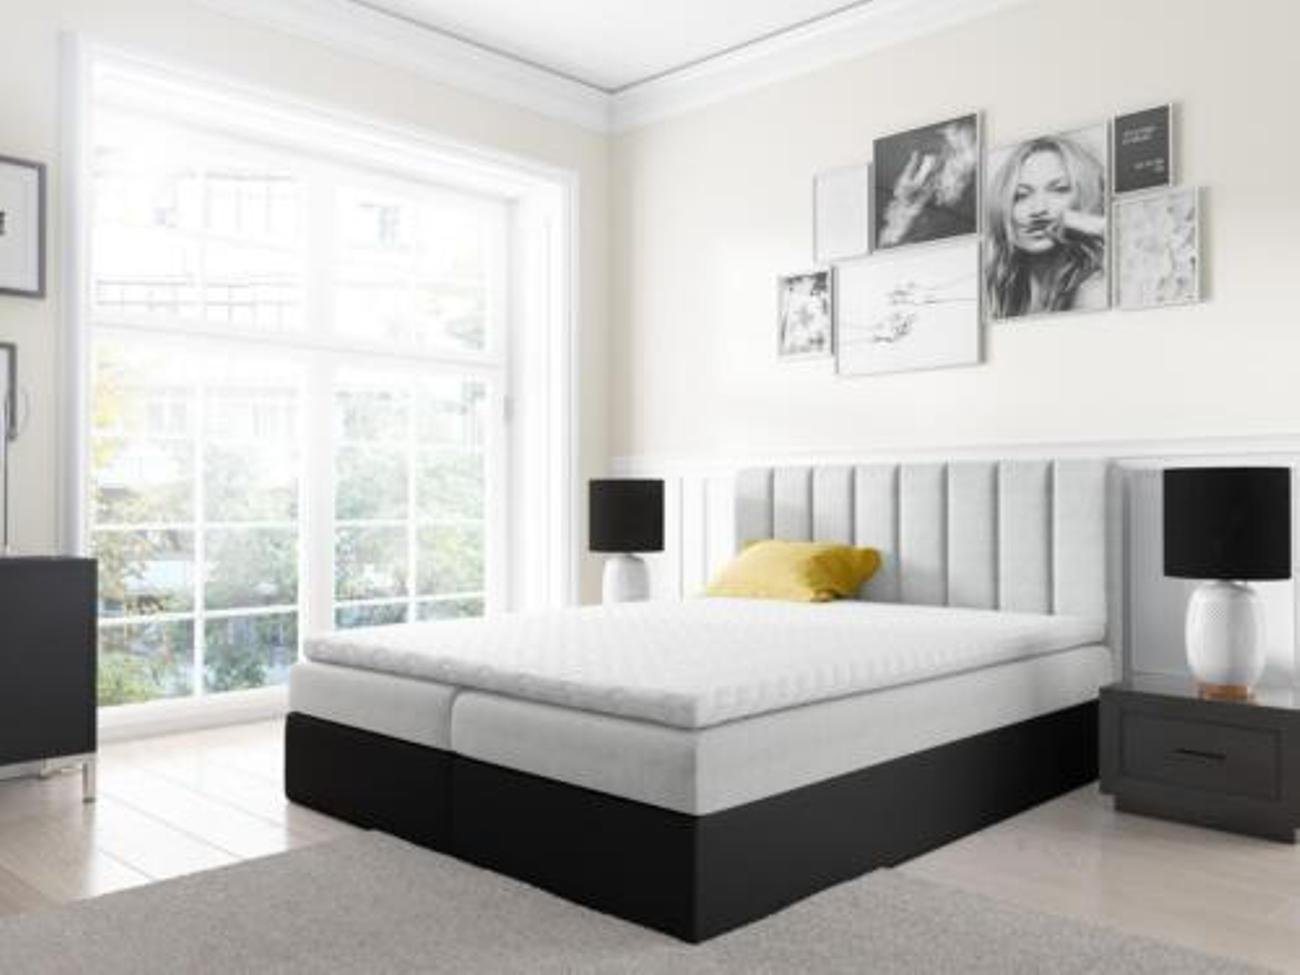 JVmoebel Bett, Boxspringbett Doppelbett Bett mit Bettkasten Ehebett Betten 180cm von JVmoebel